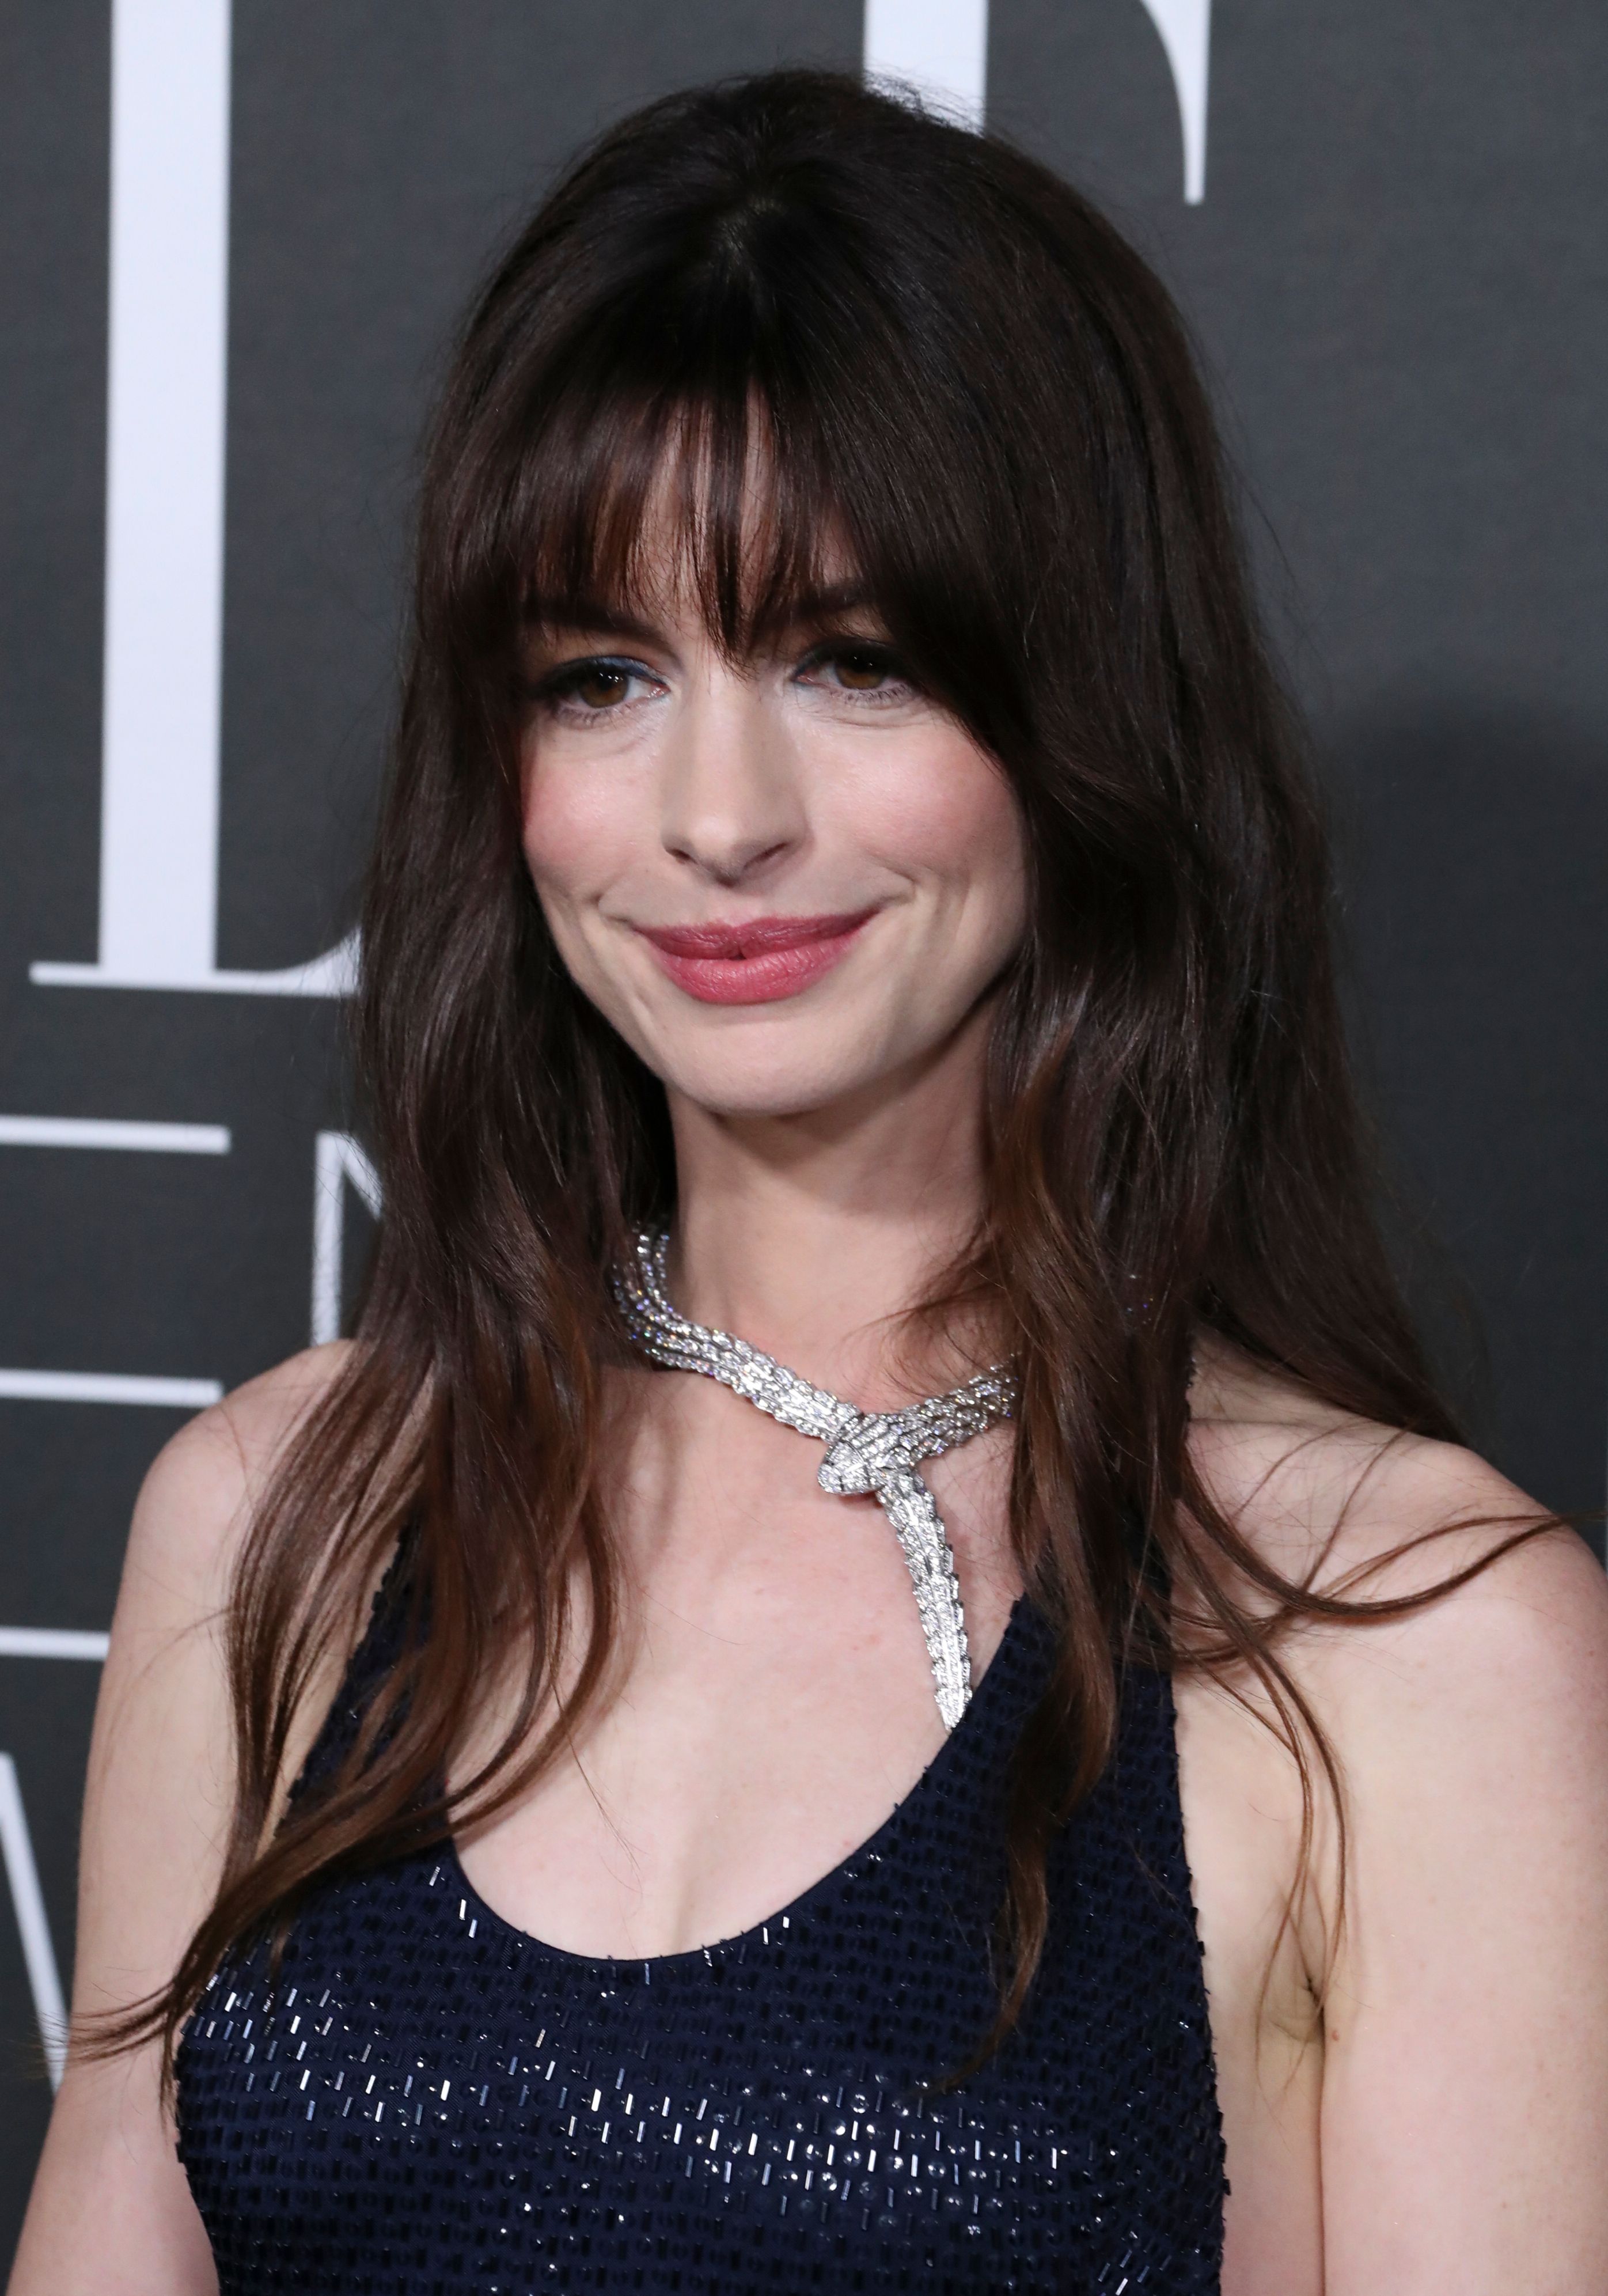 Oscars 2013: Anne Hathaway's nipples make a bid for stardom